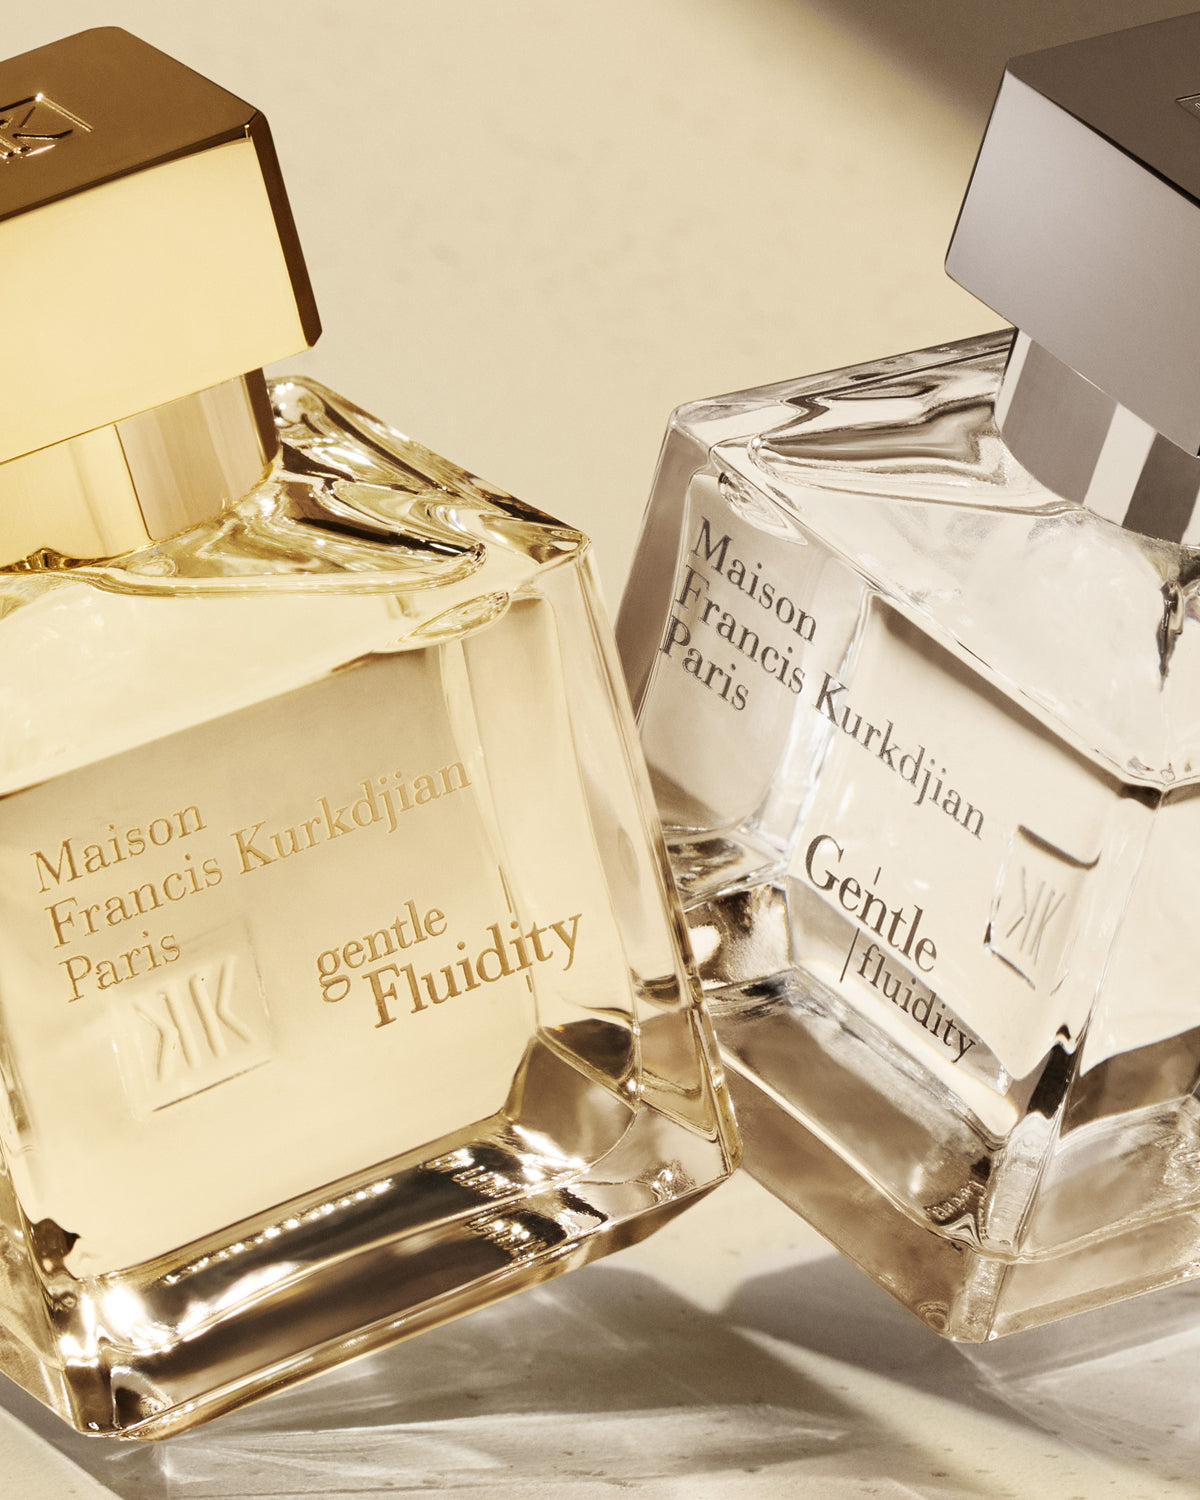 Maison Francis Kurkdjian Paris Gentle Fluidity Silver Edition Eau De Parfum (2.4 fl oz) #10082069